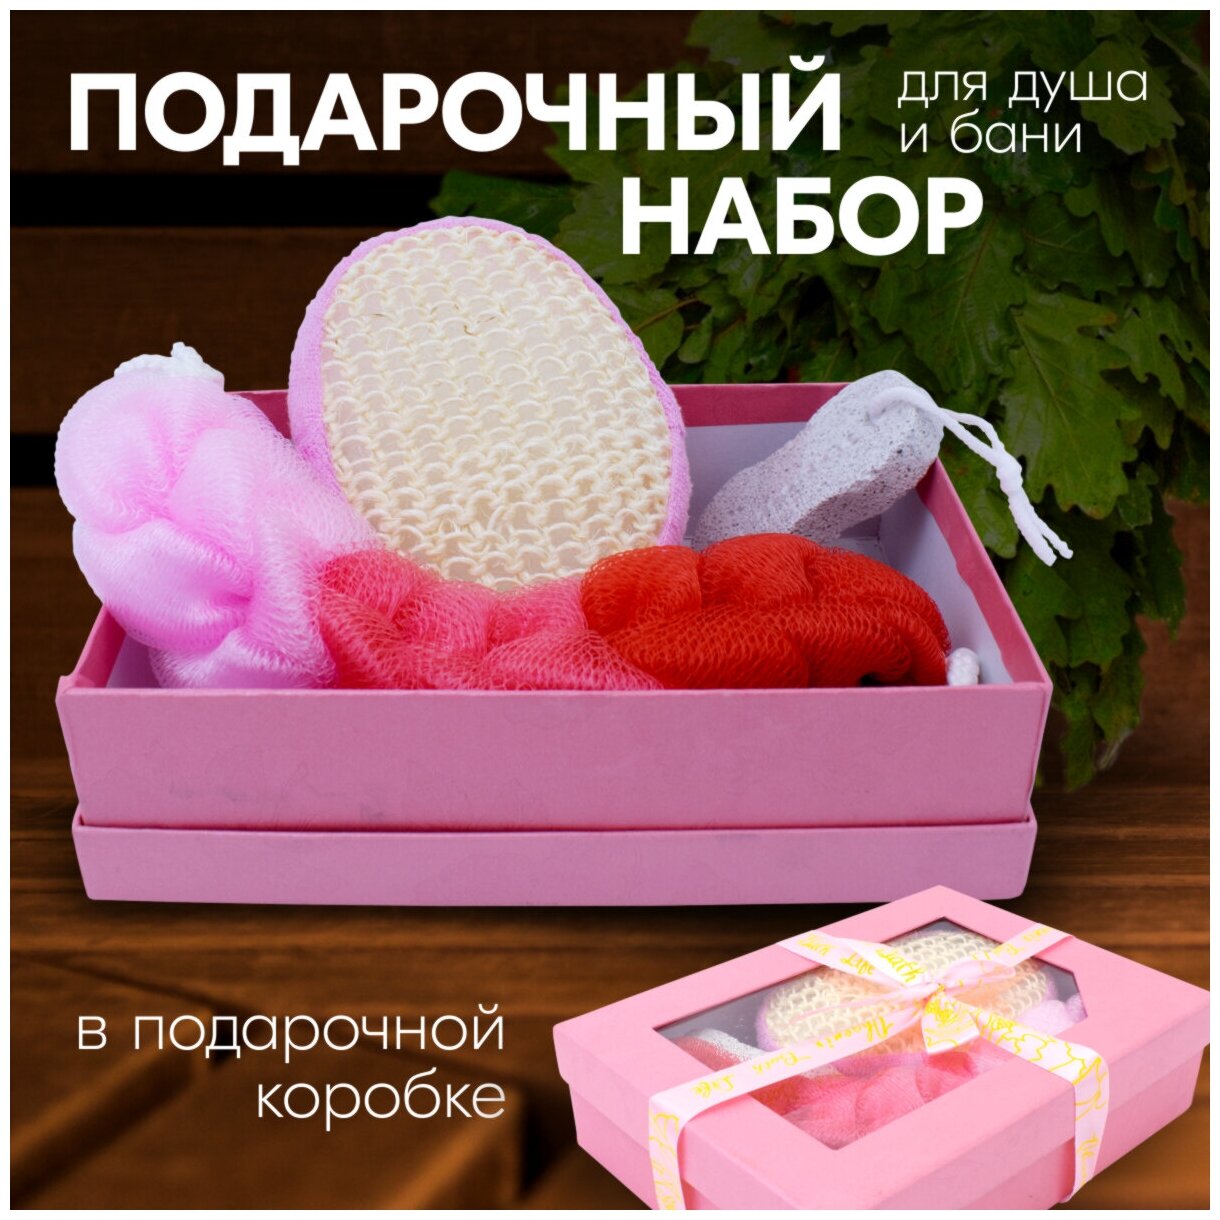 Банный подарочный набор, в коробке, розовый, 22х16х6 см